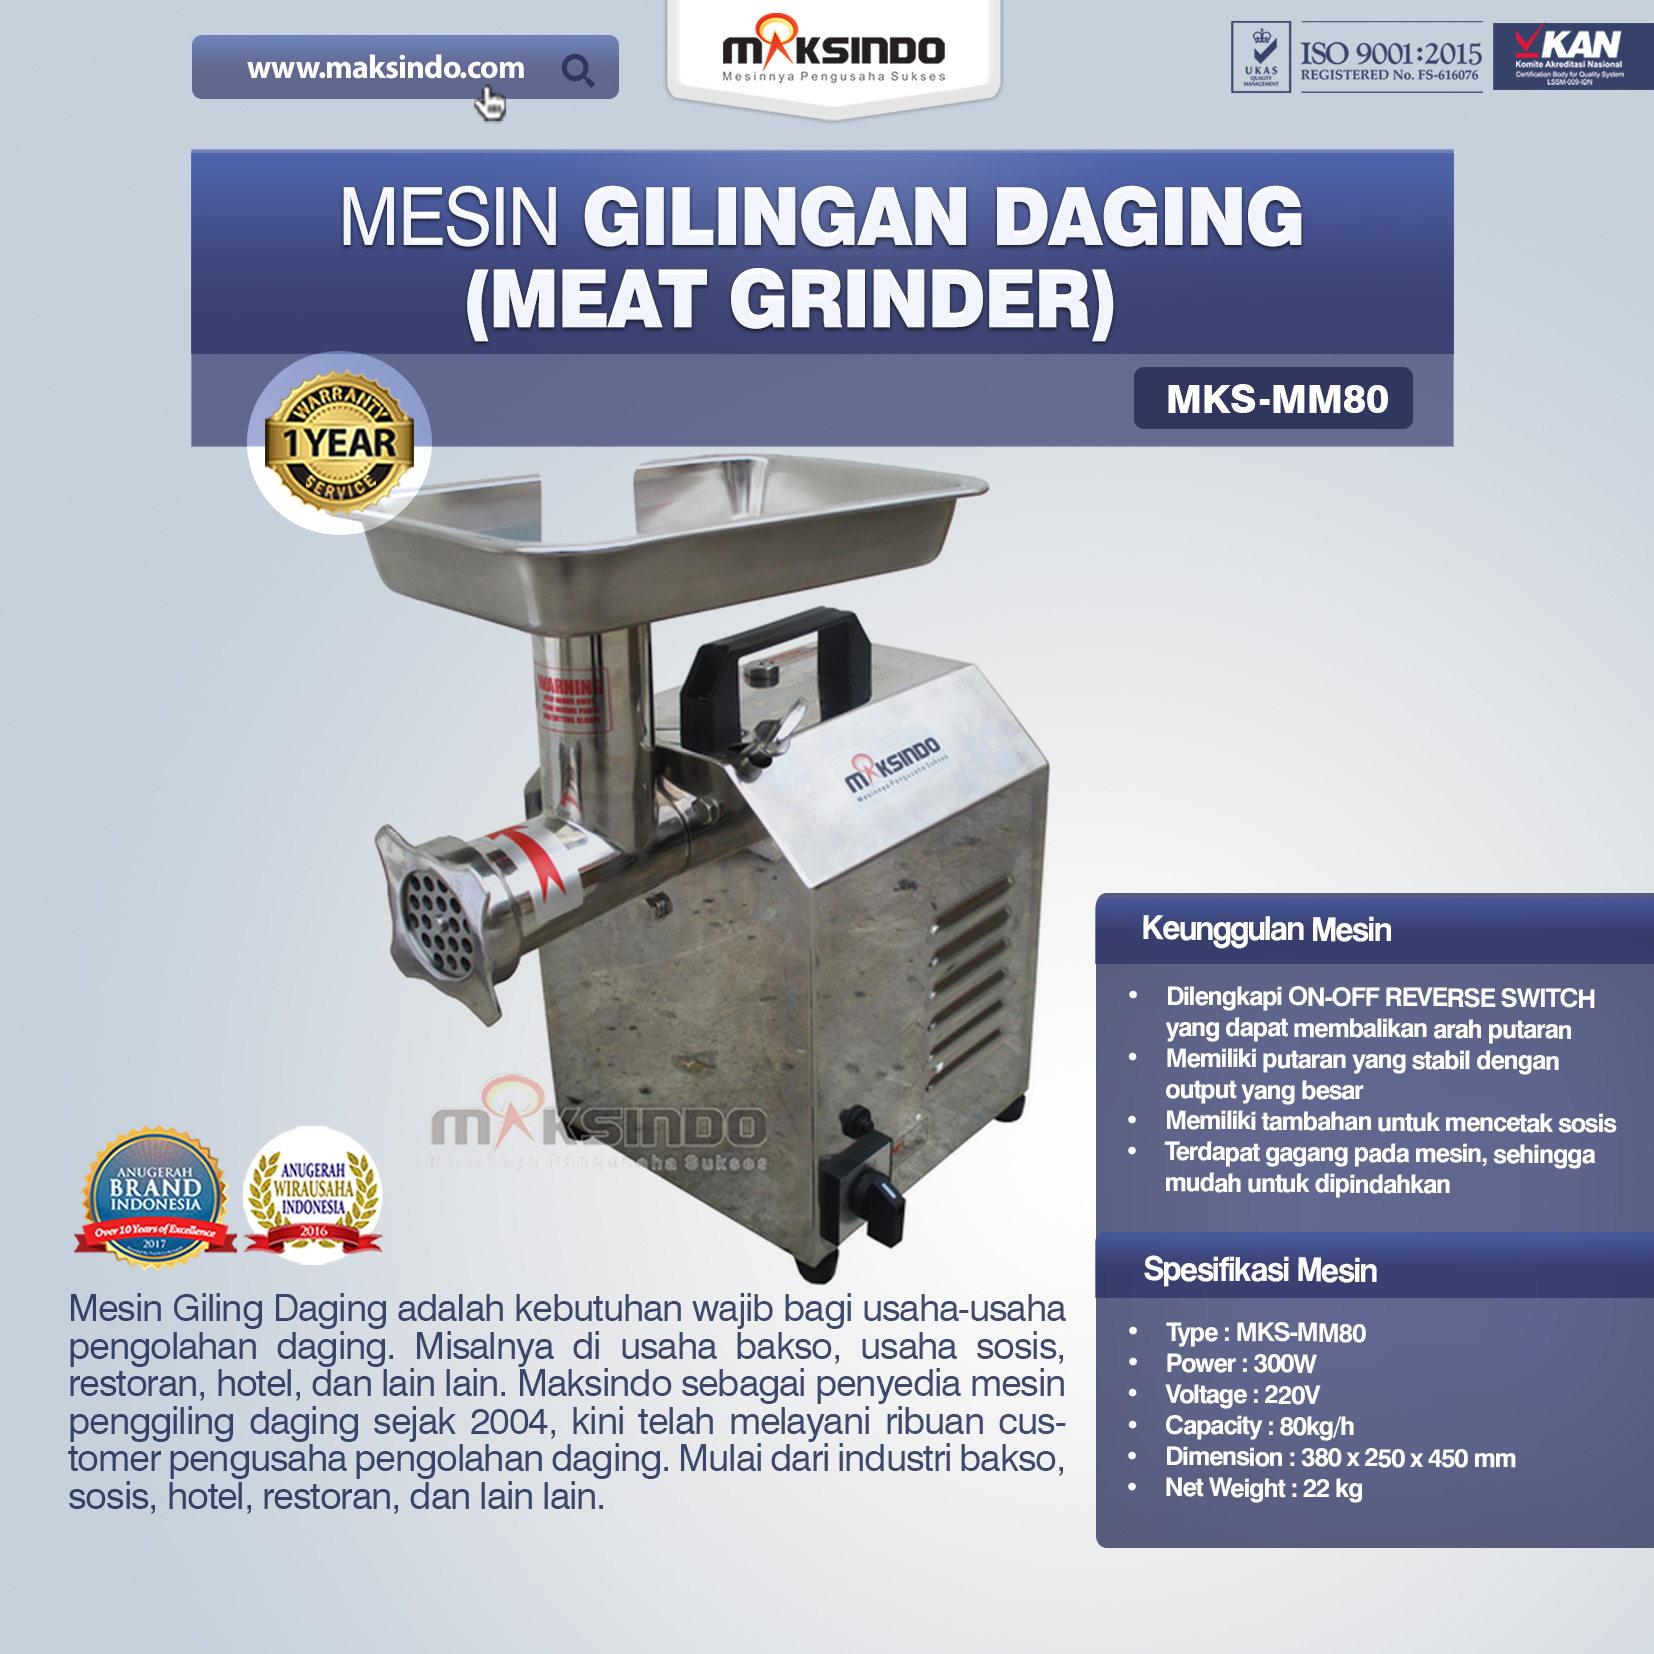 Jual Mesin Meat Grinder MKS-MM80 di Blitar